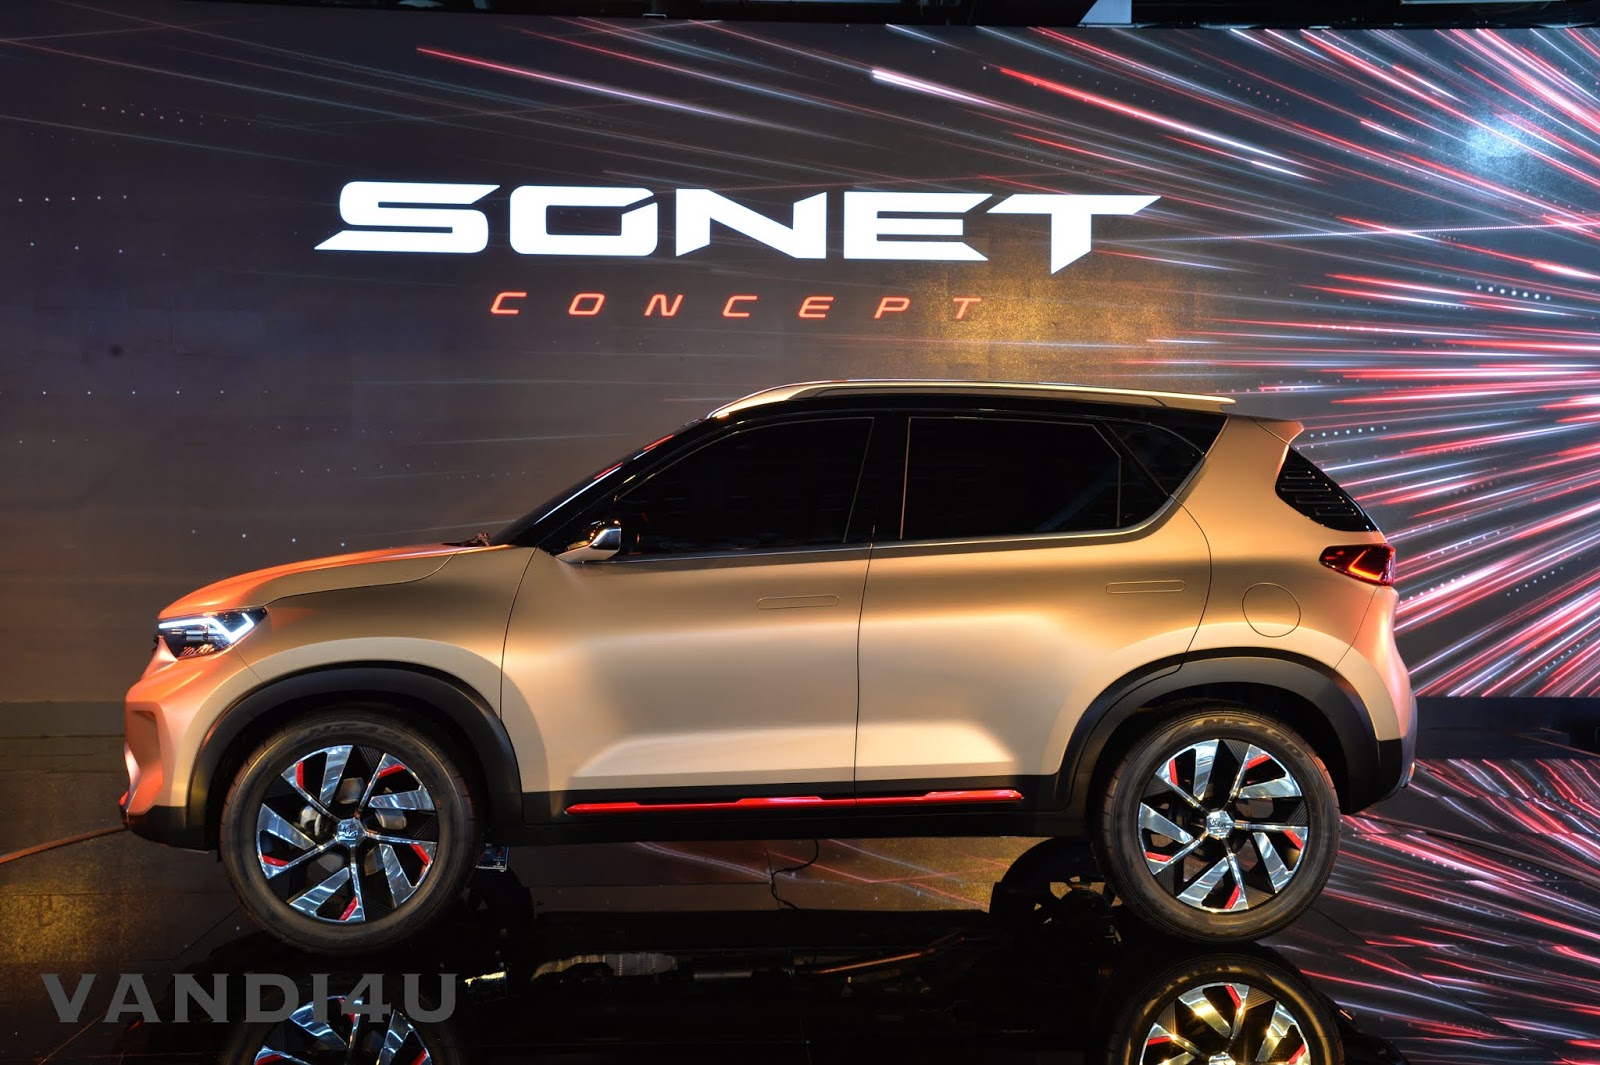 Kia's Compact SUV Sonet unveiled at Auto Expo 2020 | VANDI4U